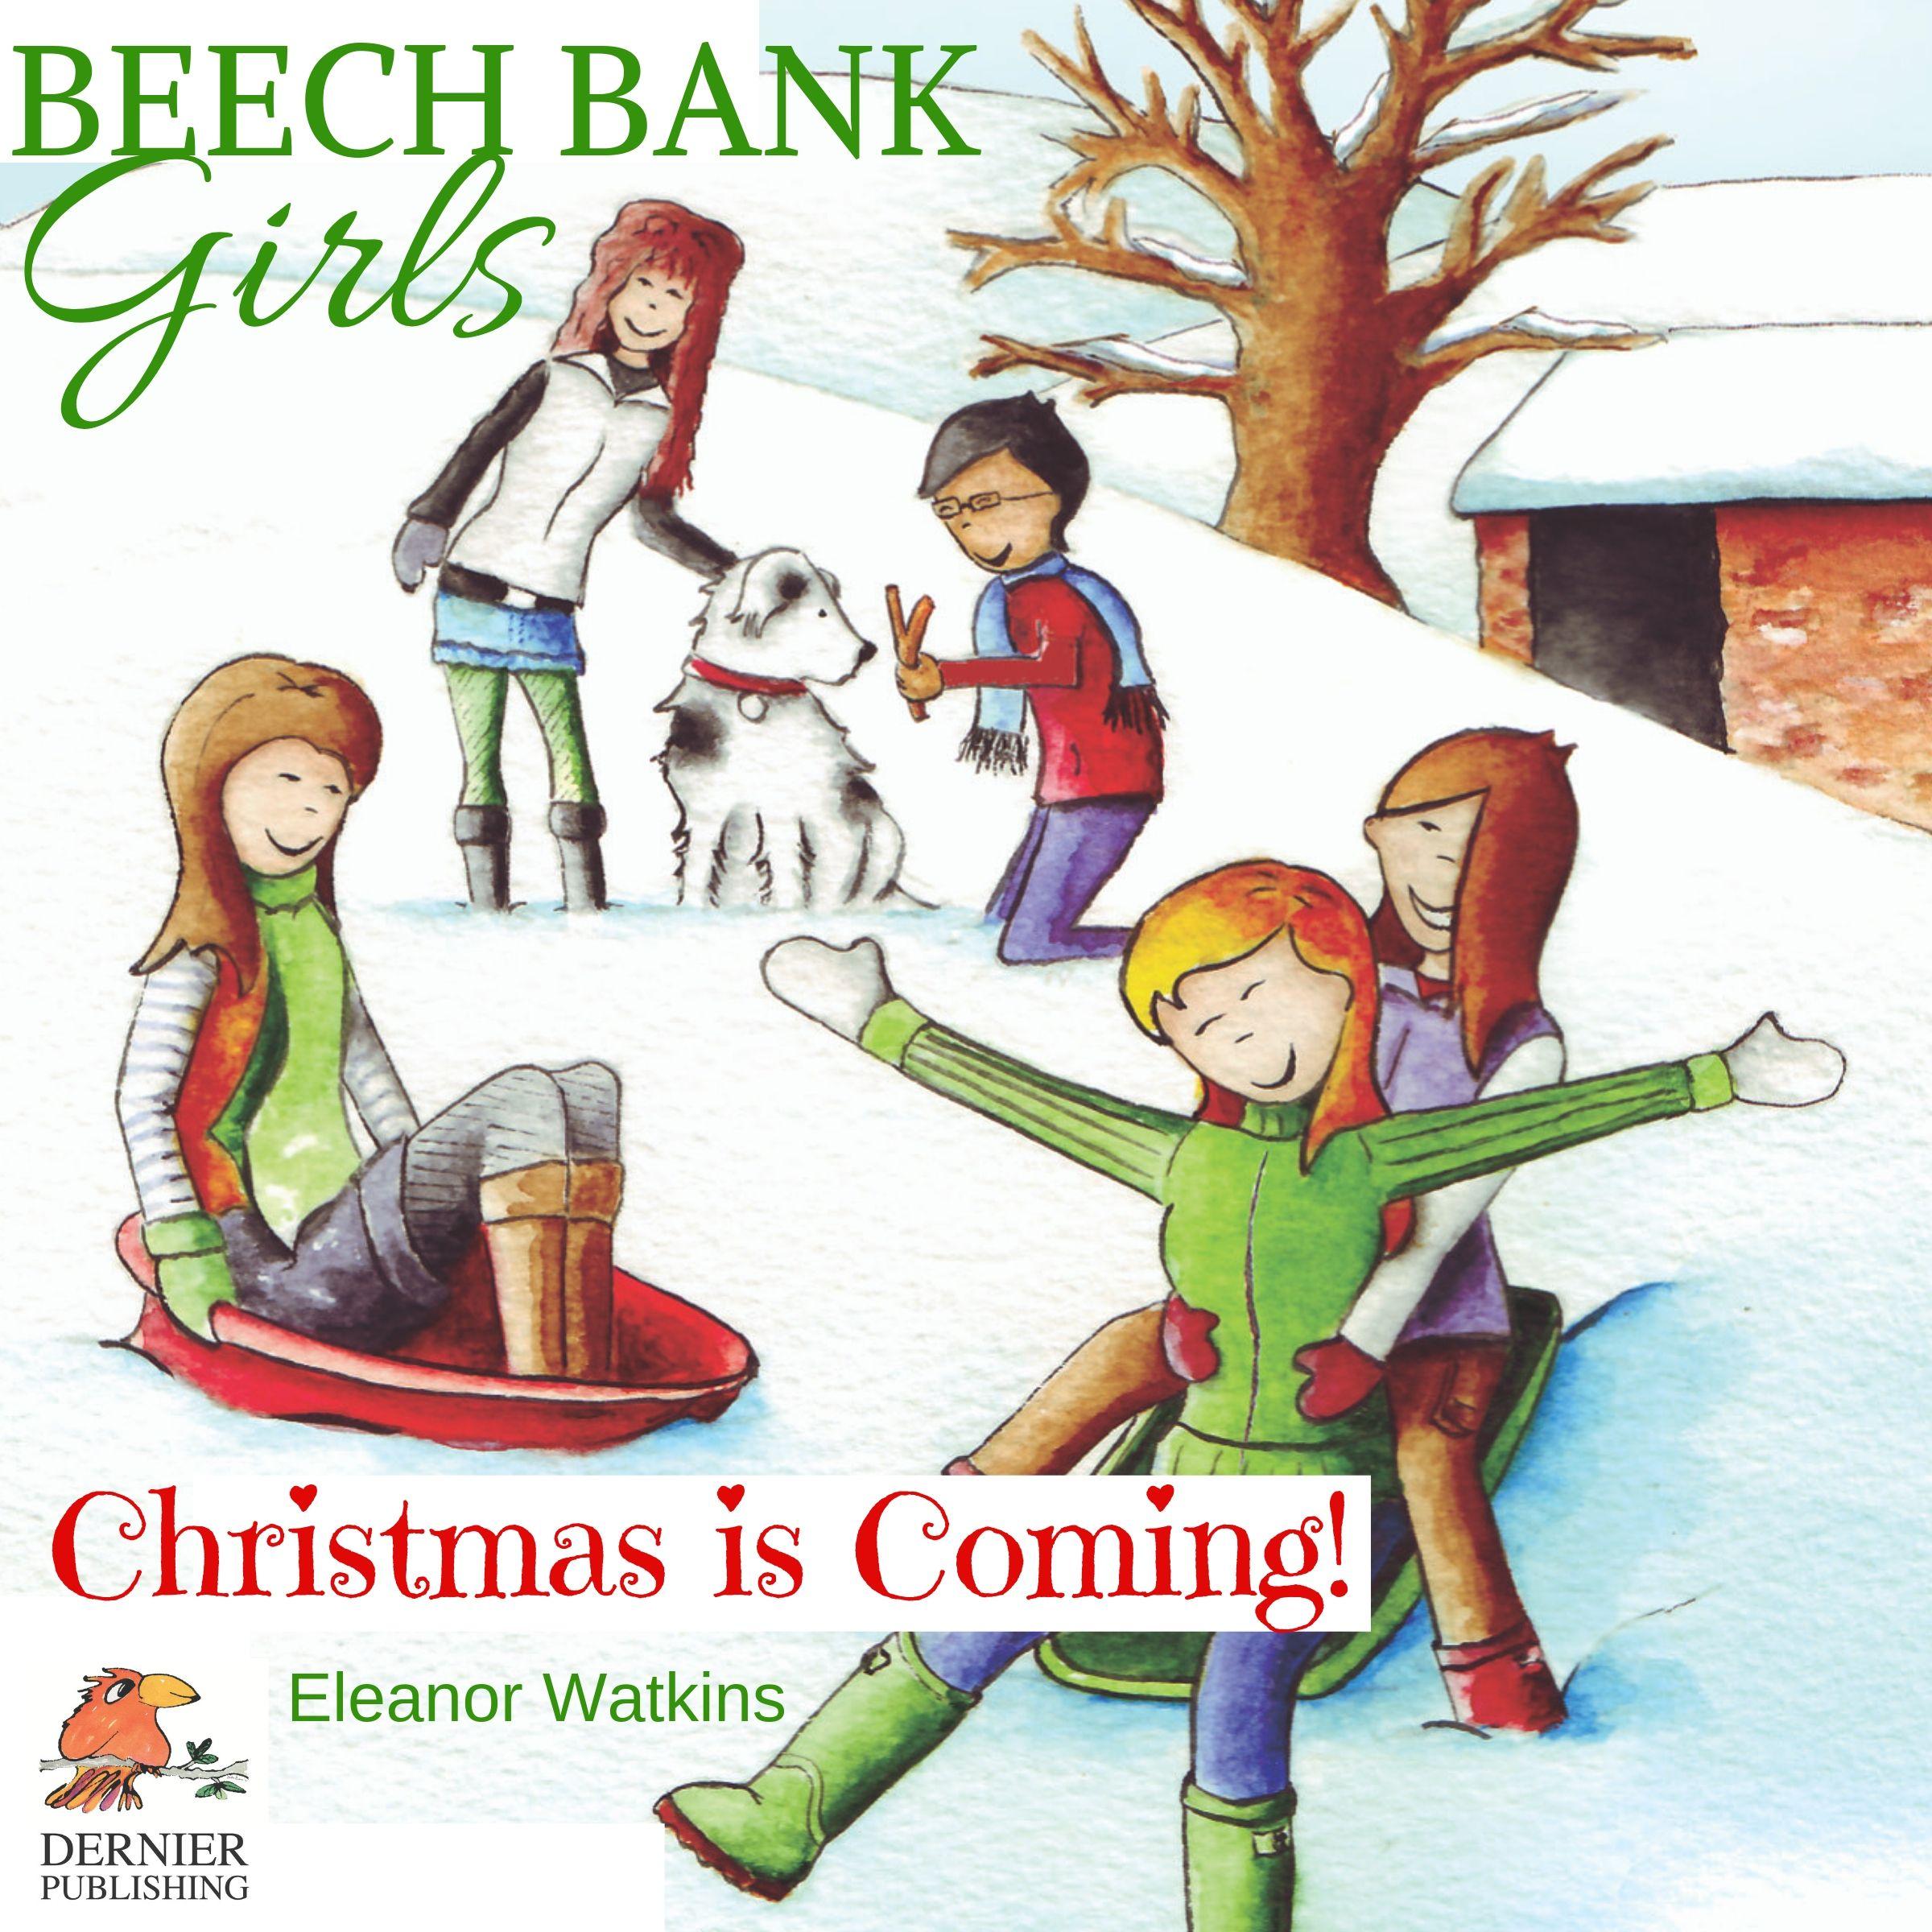 Beech Bank Girls, Christmas is Coming!